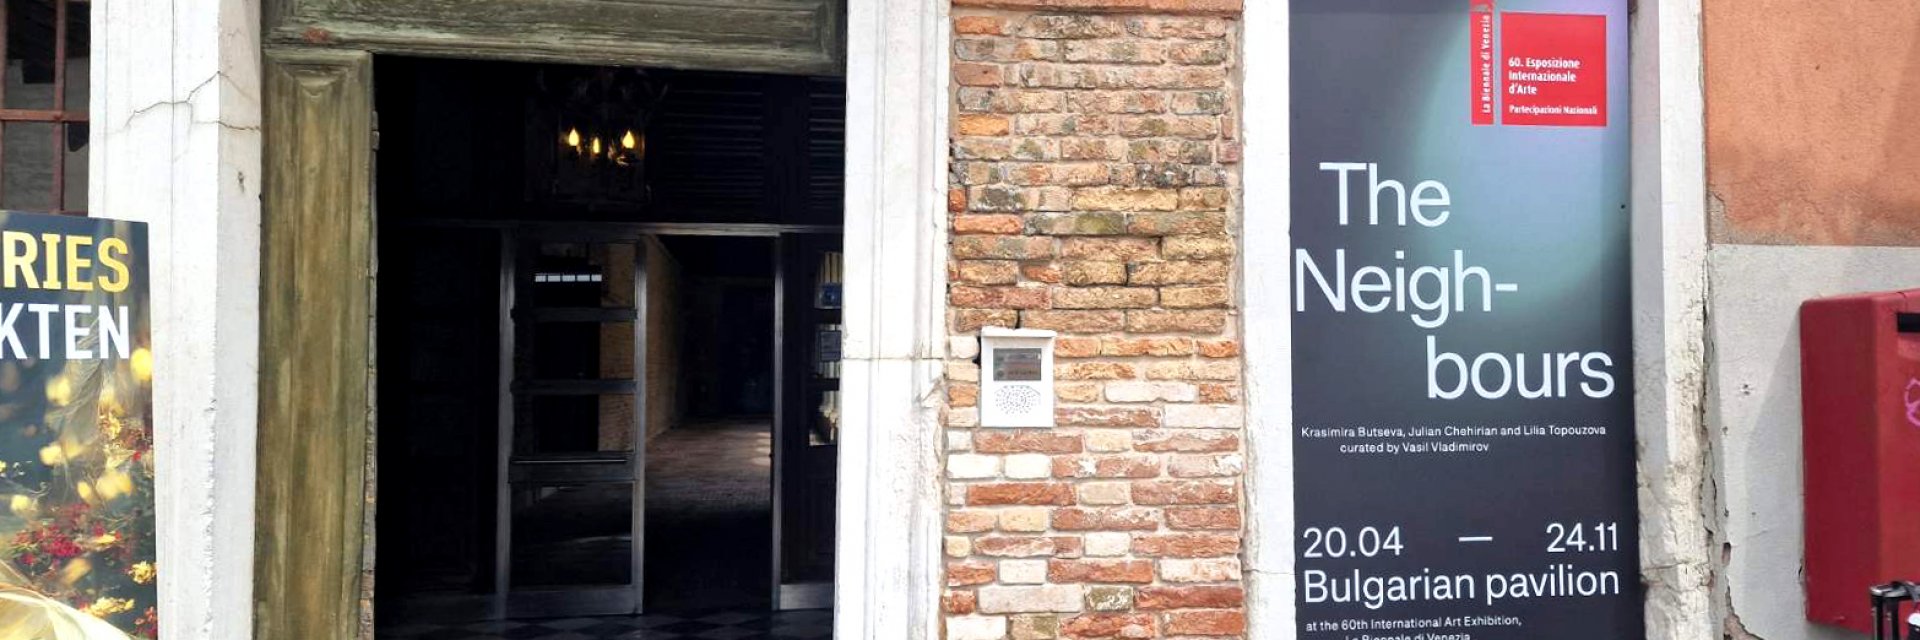 Френска журналистка постави "Съседите" сред петте най-забележителни павилиона на Венецианското биенале